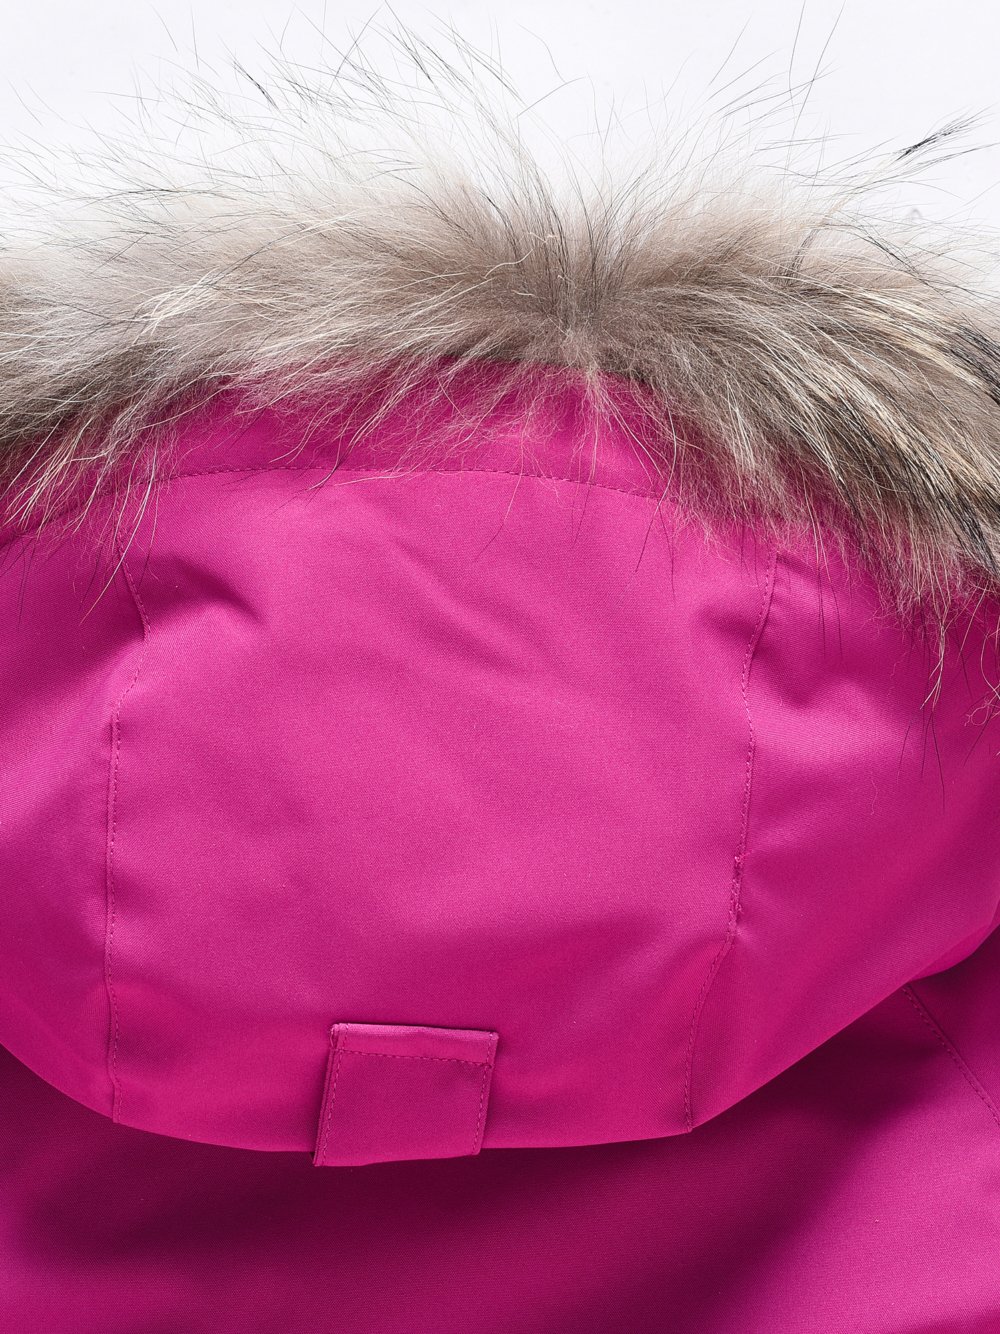 Купить куртку парку для девочки оптом от производителя недорого в Москве 9340M 1